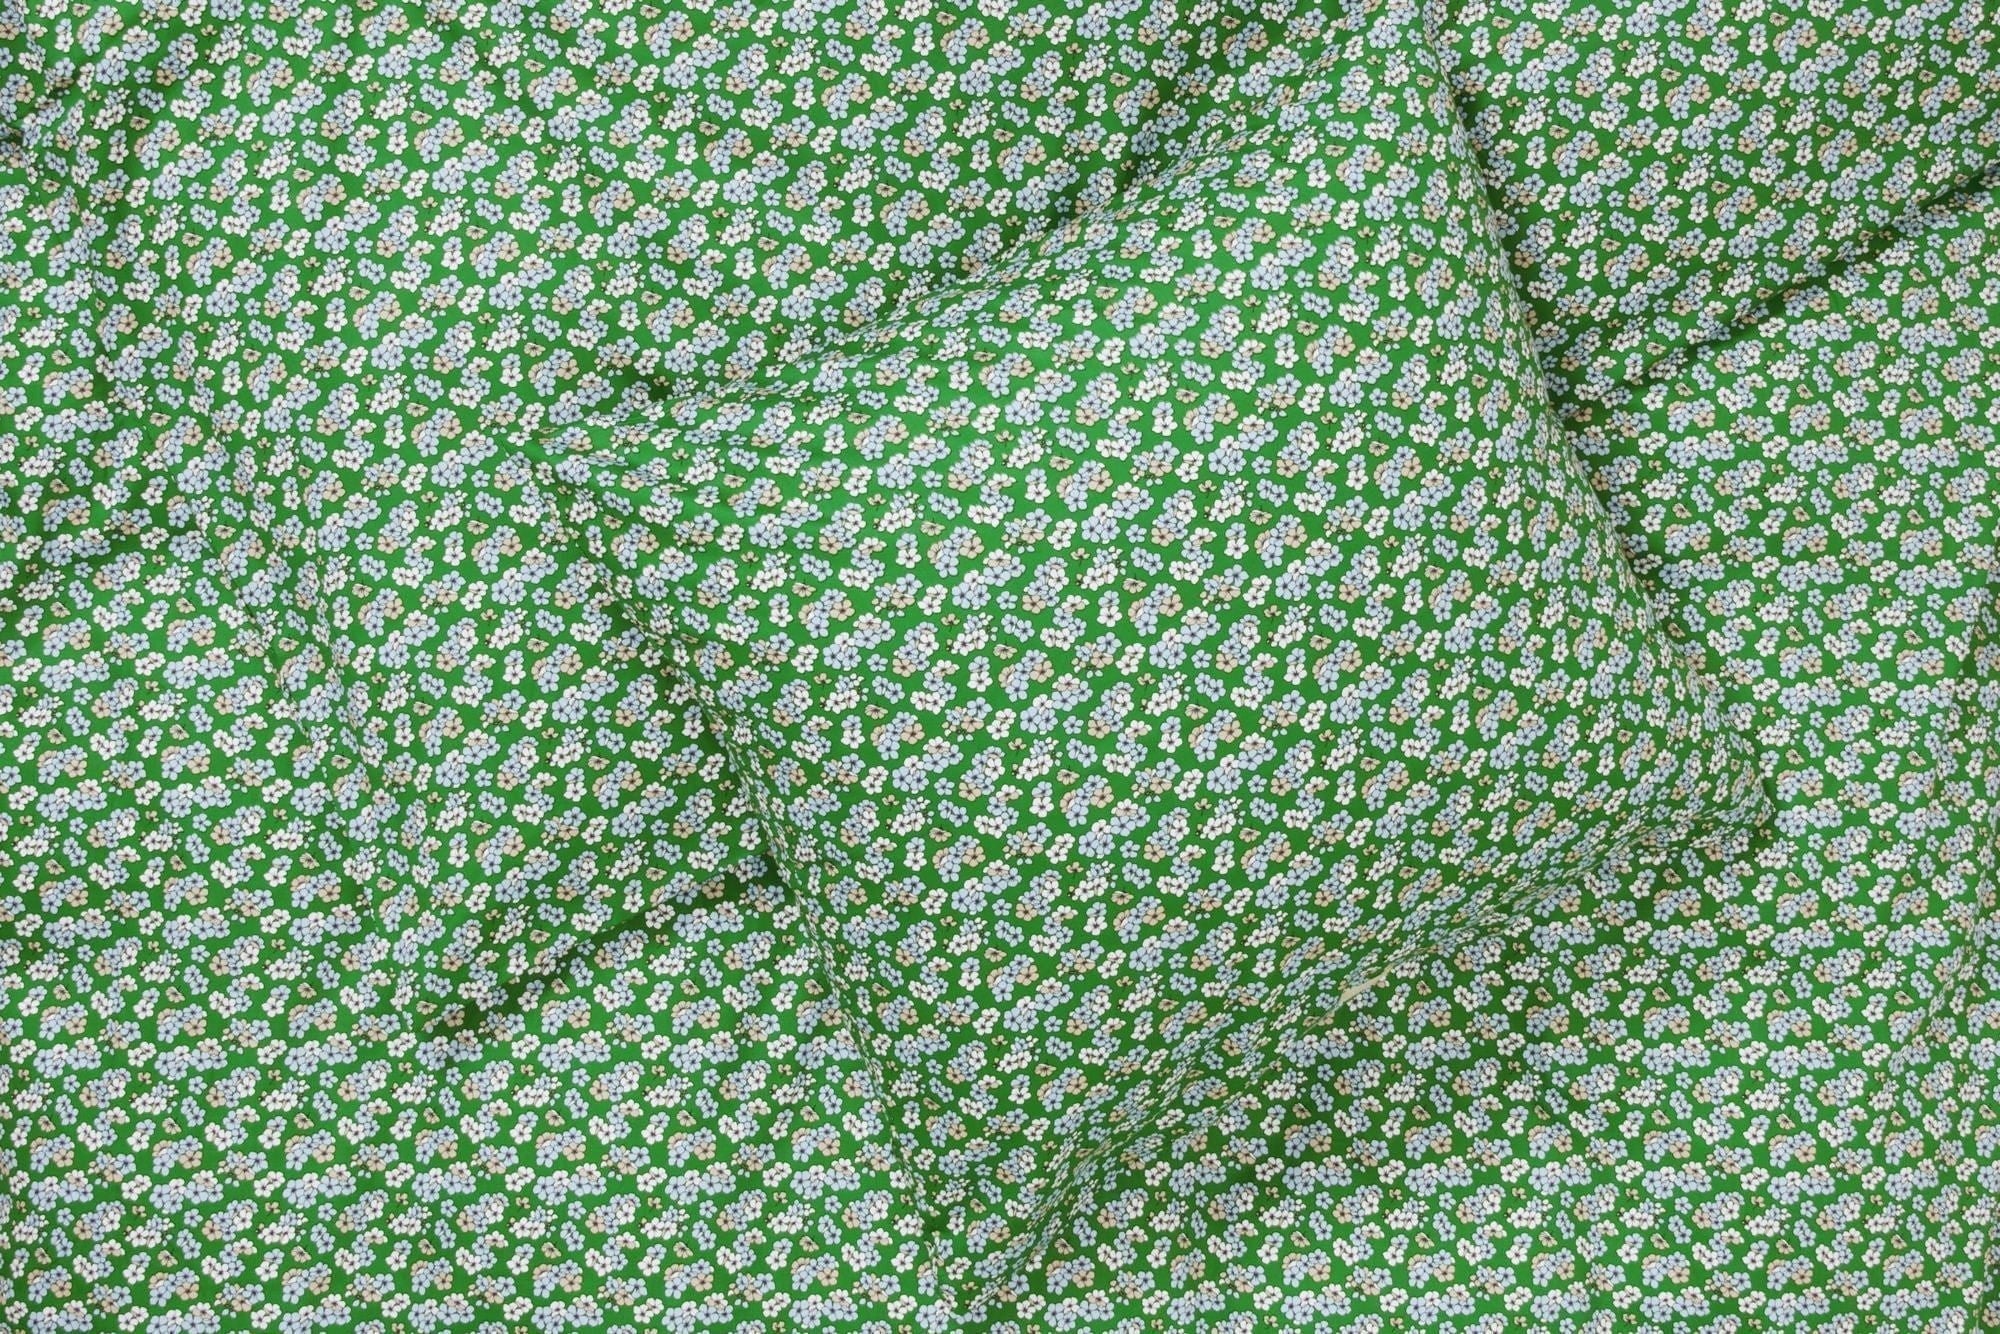 Juna Aangenaam bed linnen 140x220 cm, groen